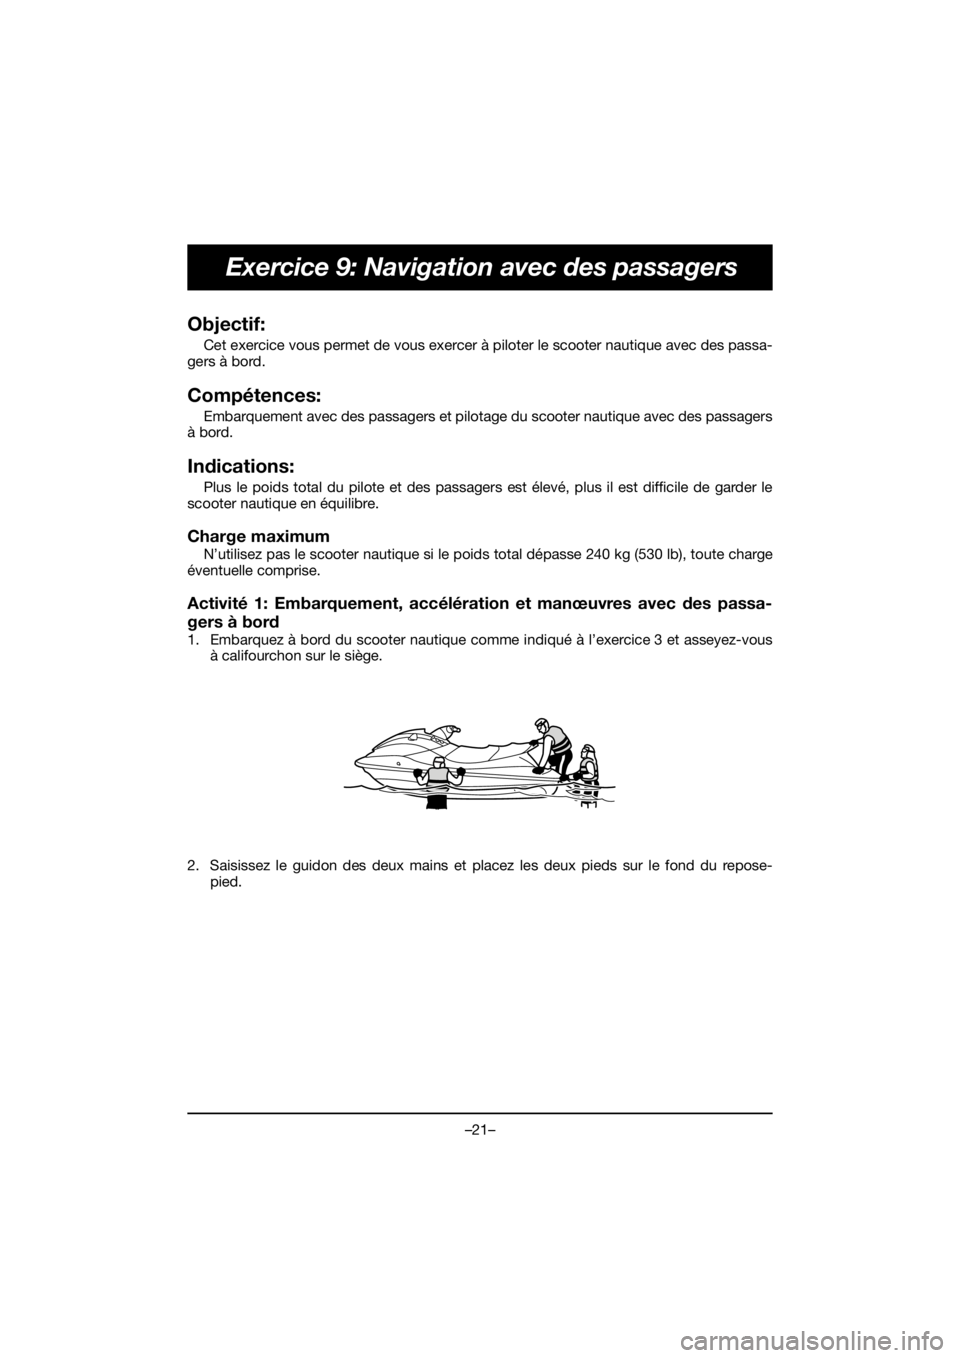 YAMAHA VX CRUISER HO 2020  Manuale duso (in Italian) –21–
Exercice 9: Navigation avec des passagers
Objectif: 
Cet exercice vous permet de vous exercer à piloter le scooter nautique avec des passa-
gers à bord.
Compétences: 
Embarquement avec des